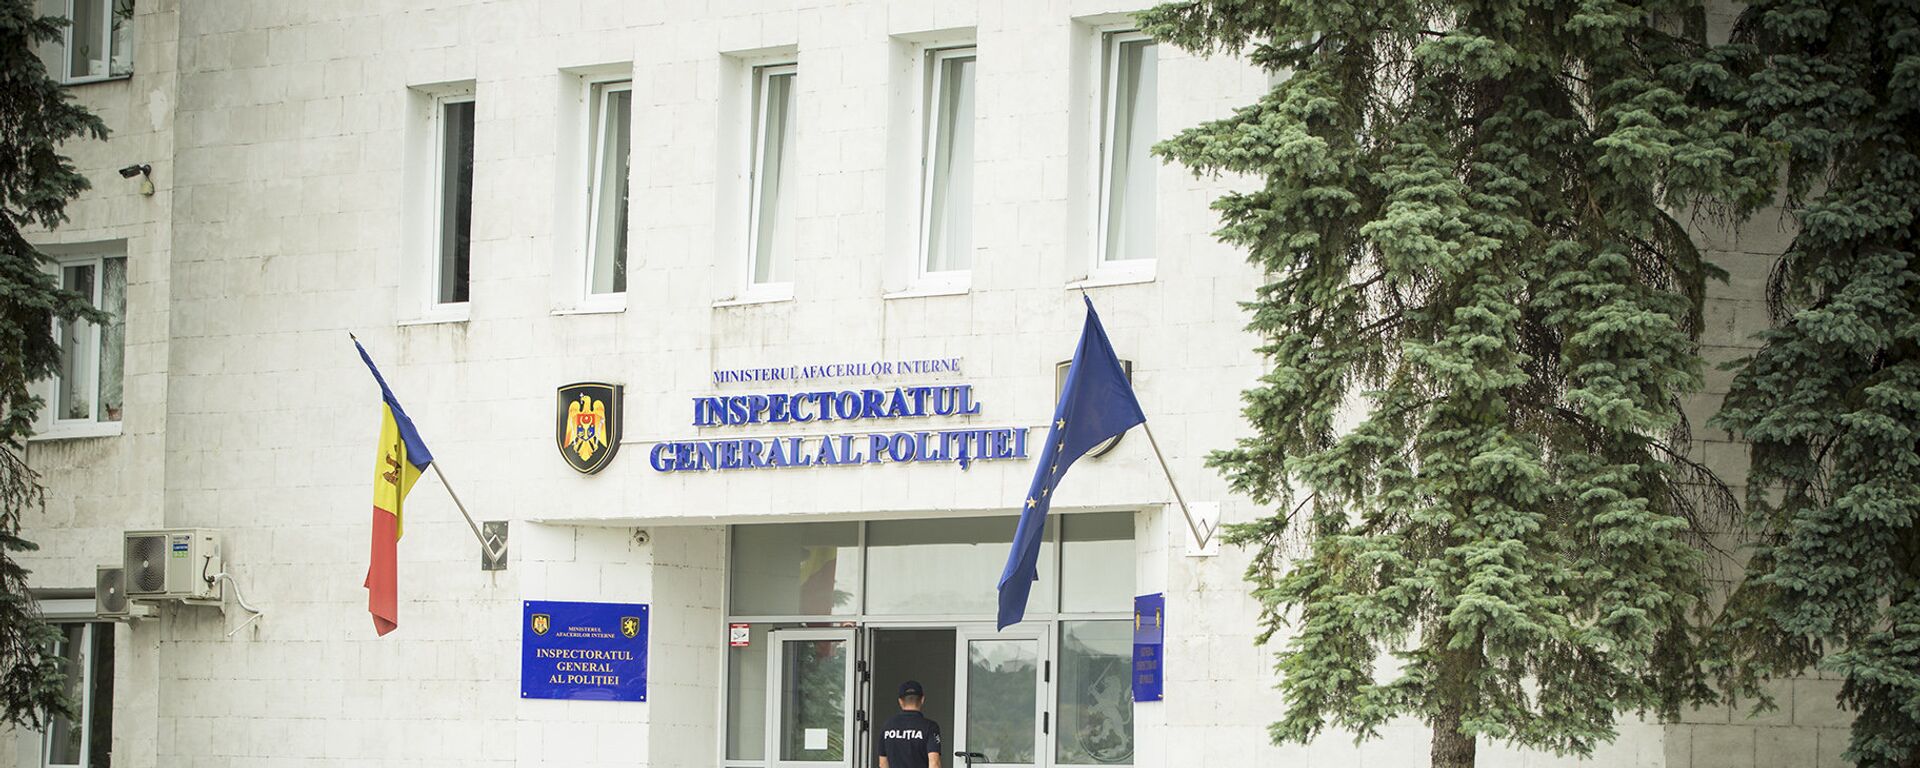 Inspectoratu general al poliției - Sputnik Молдова, 1920, 13.05.2021